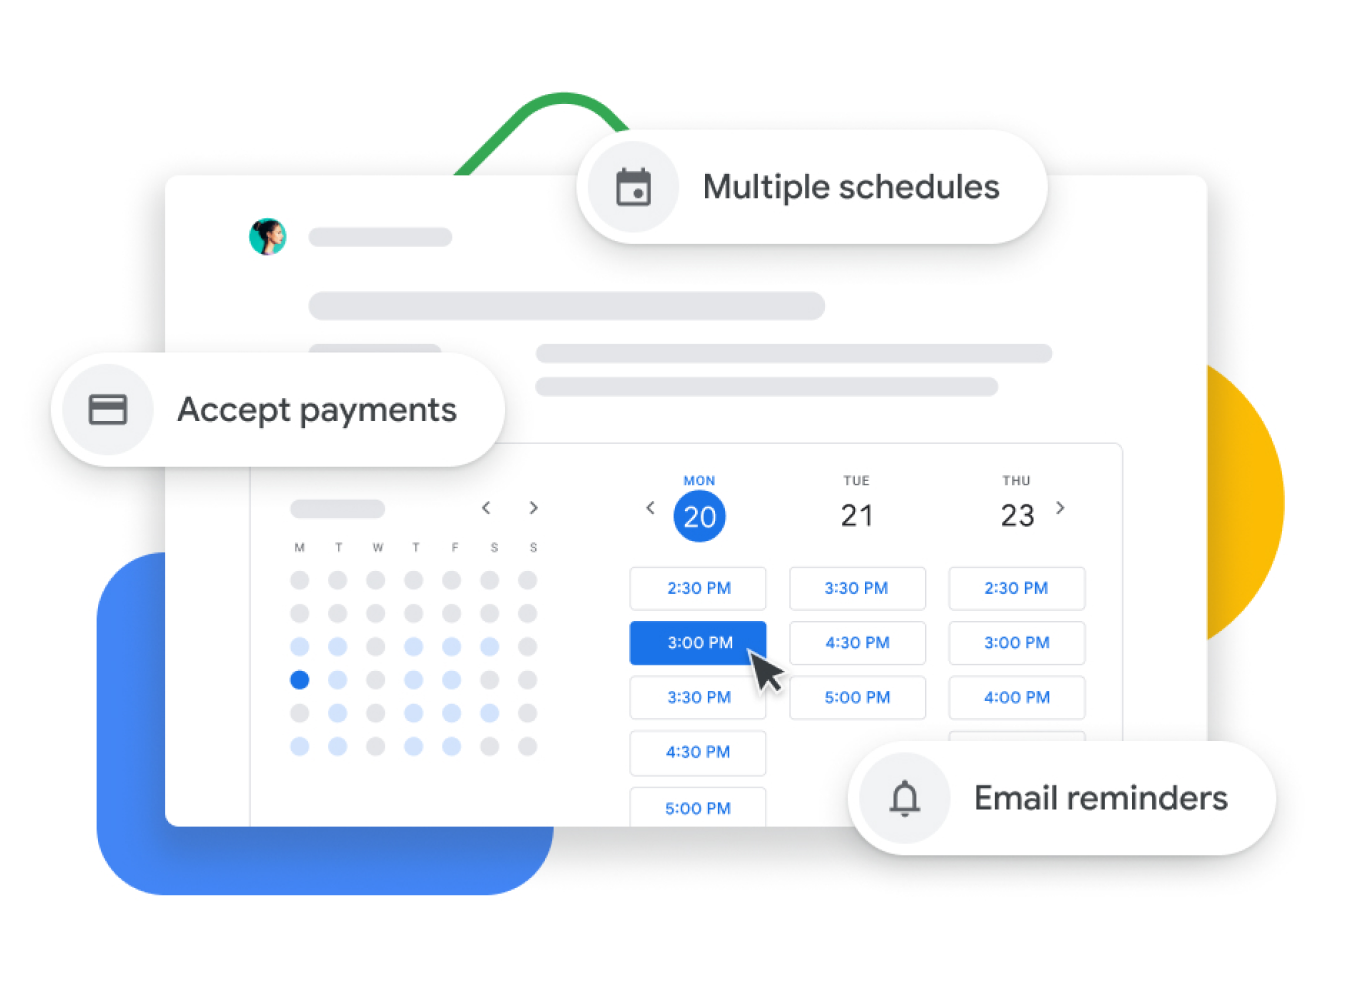 Représentation graphique d'un agenda Google avec planification de rendez-vous qui permet aux utilisateurs de les confirmer auprès des clients, d'envoyer des rappels par courriel et d'accepter les paiements.